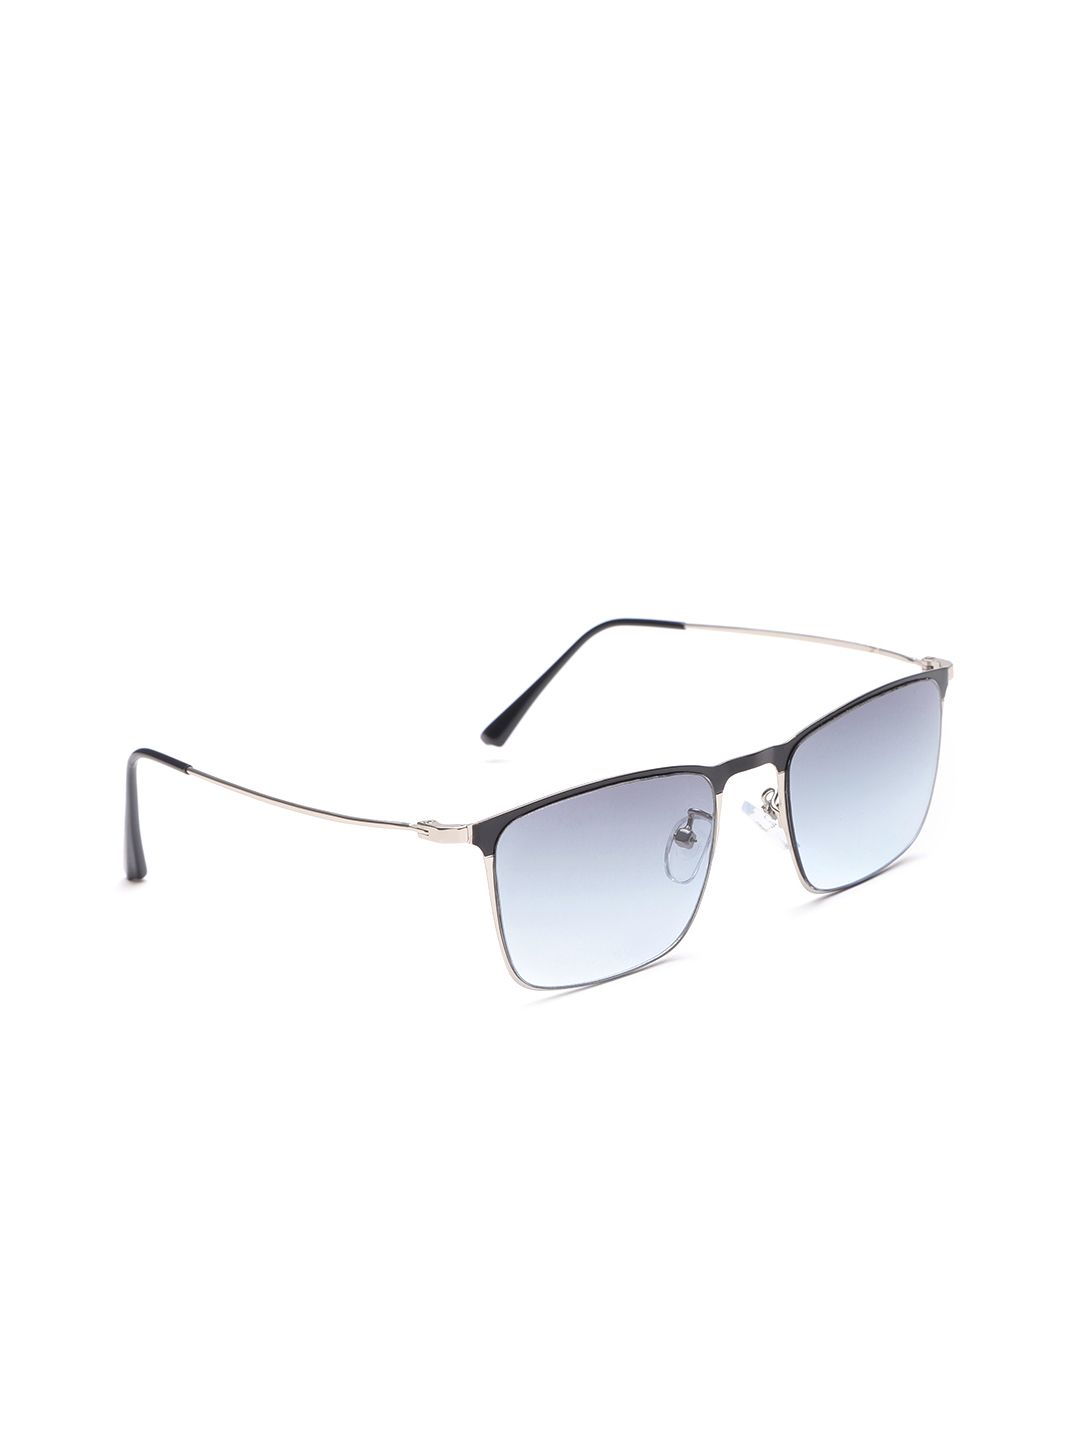 Carlton London Unisex Square Sunglasses B80-307 Price in India